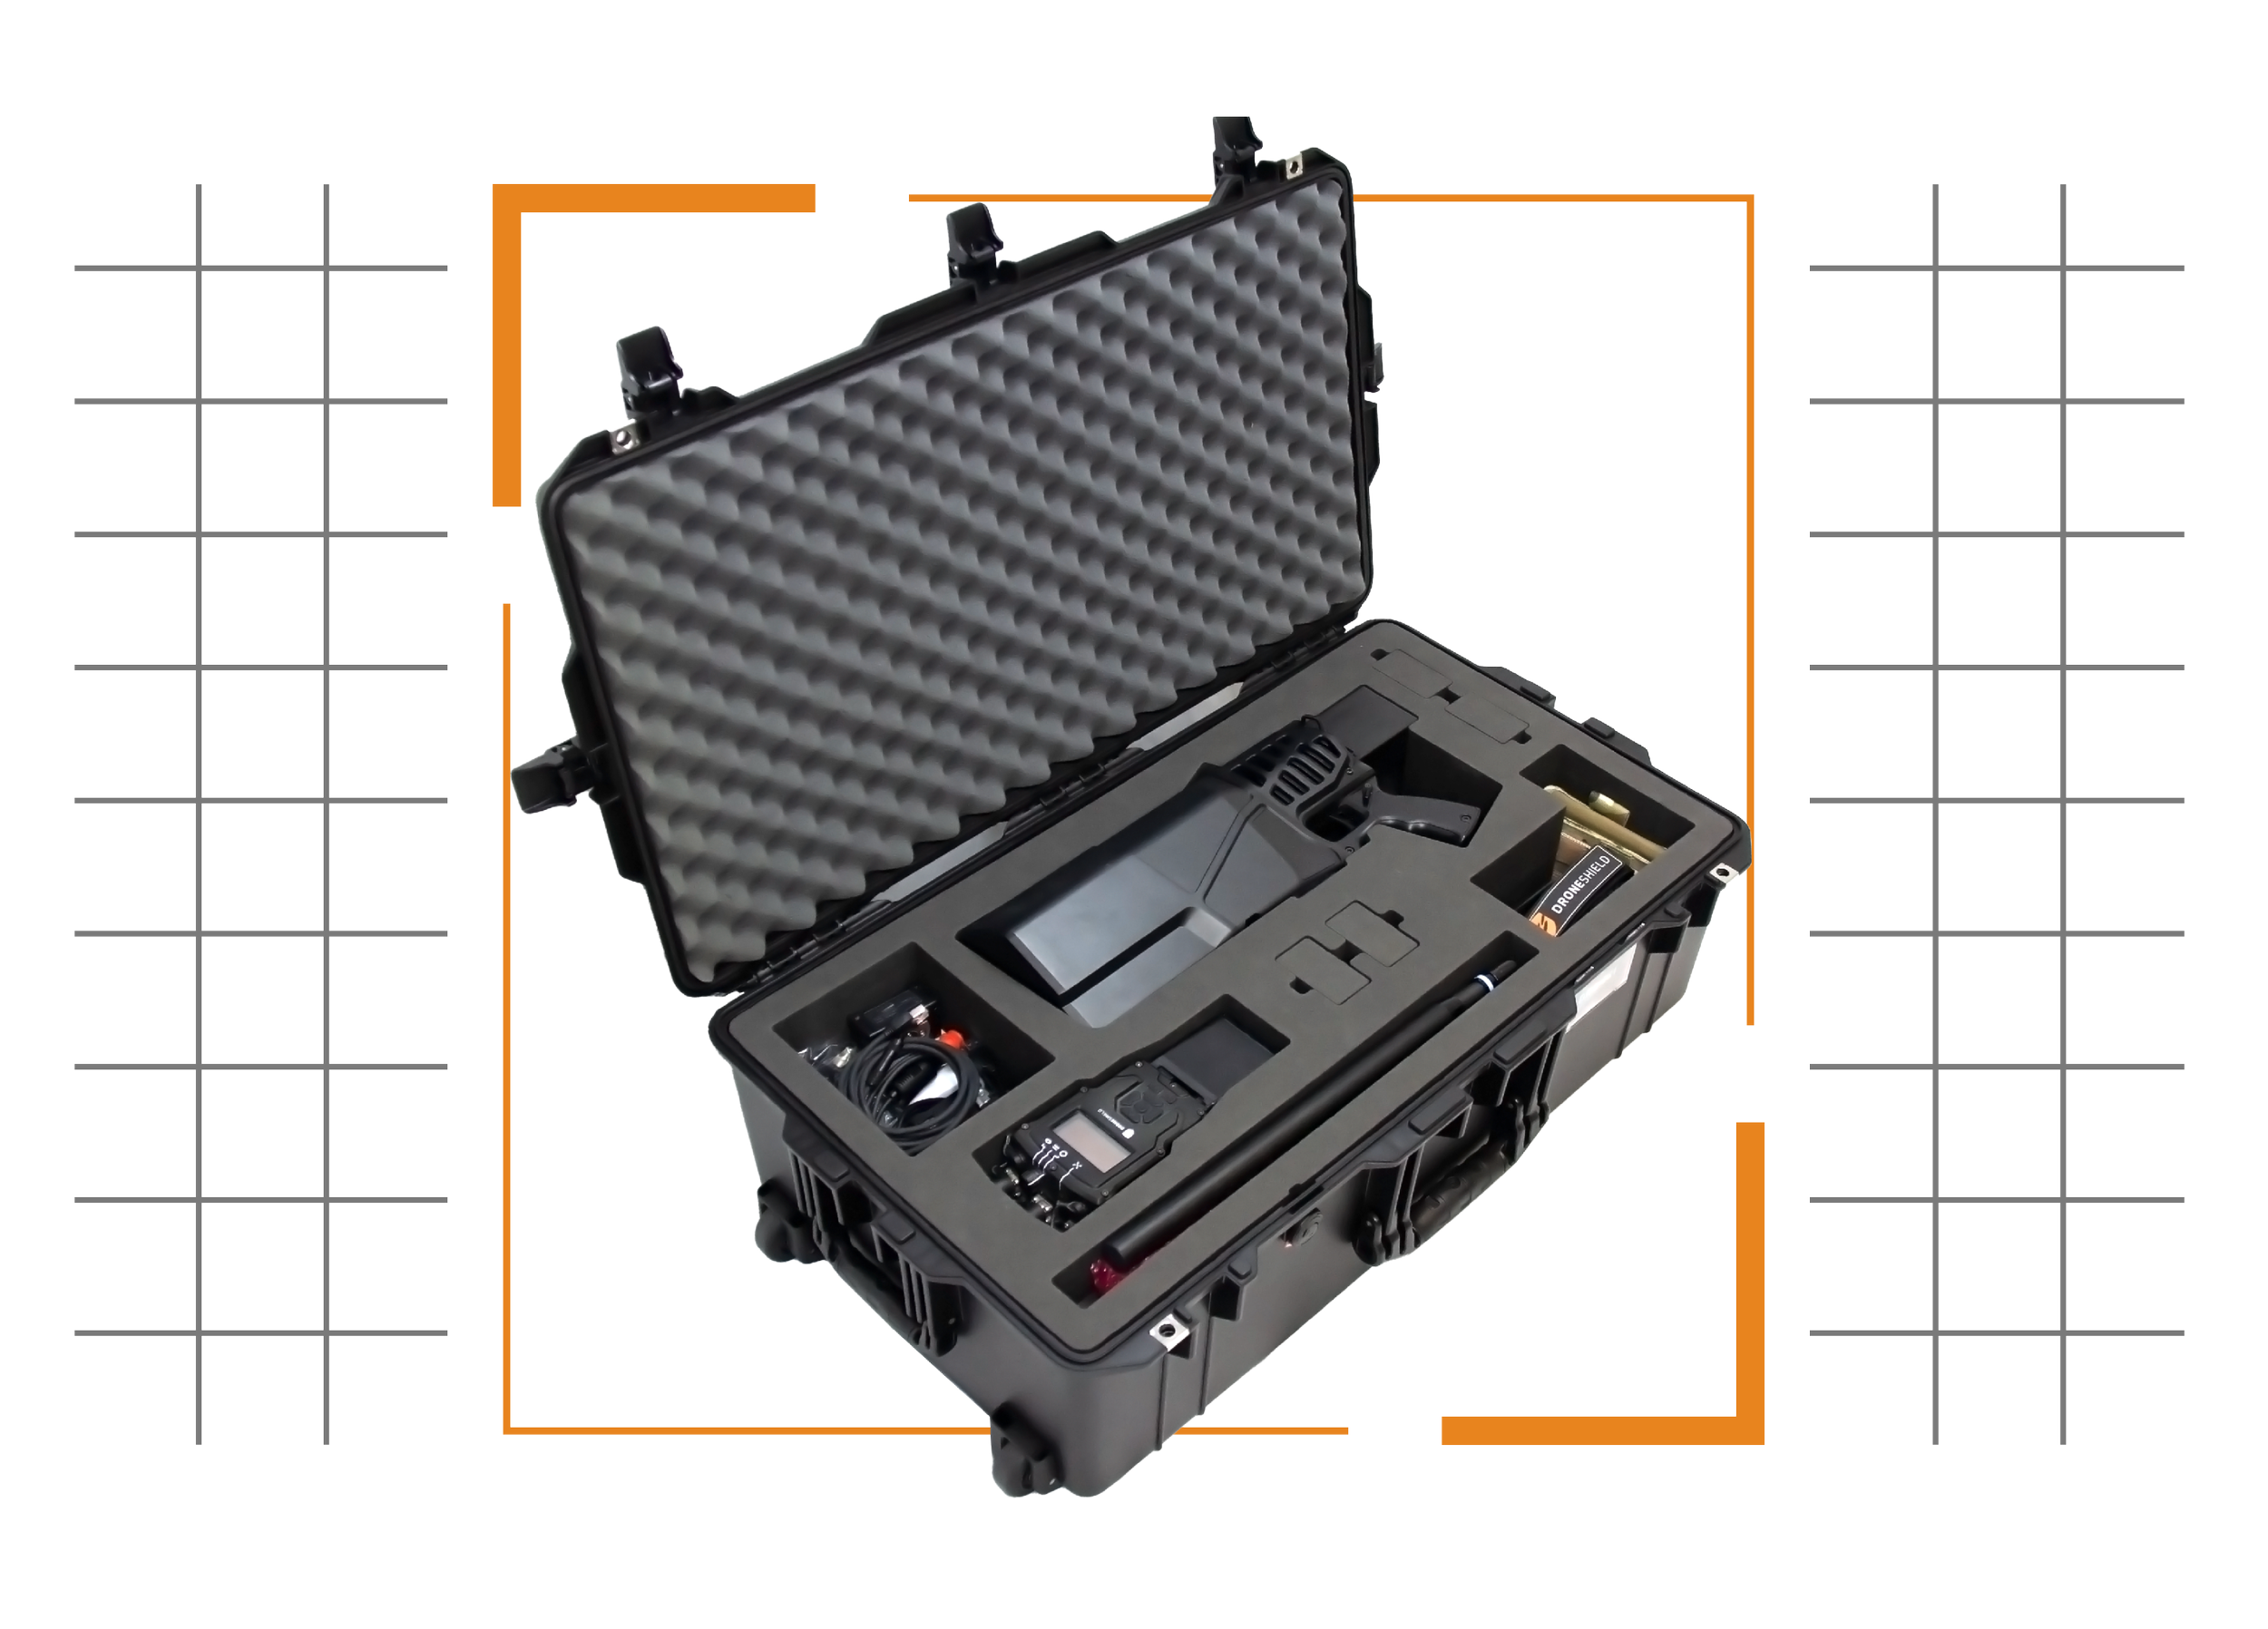 Immediate Response Kit for portable detection